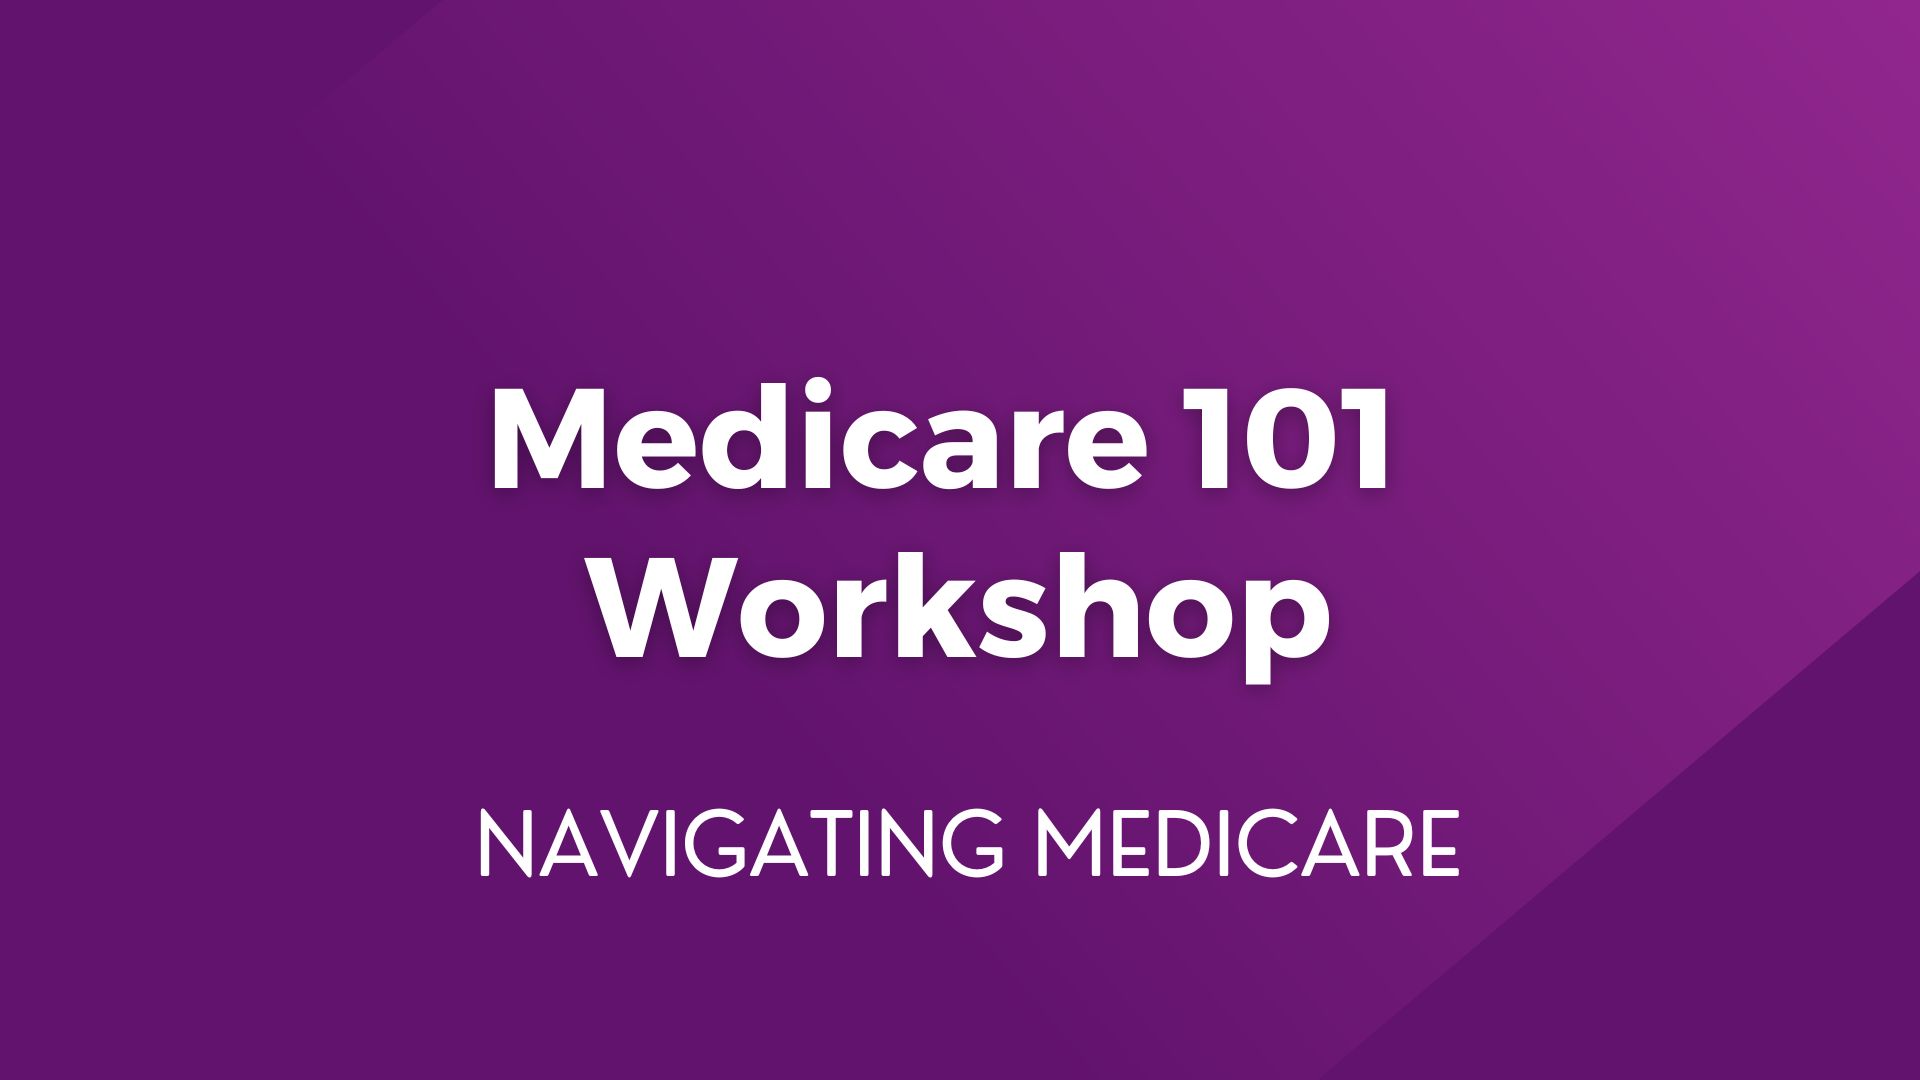 Medicare 101 Workshop – January 23